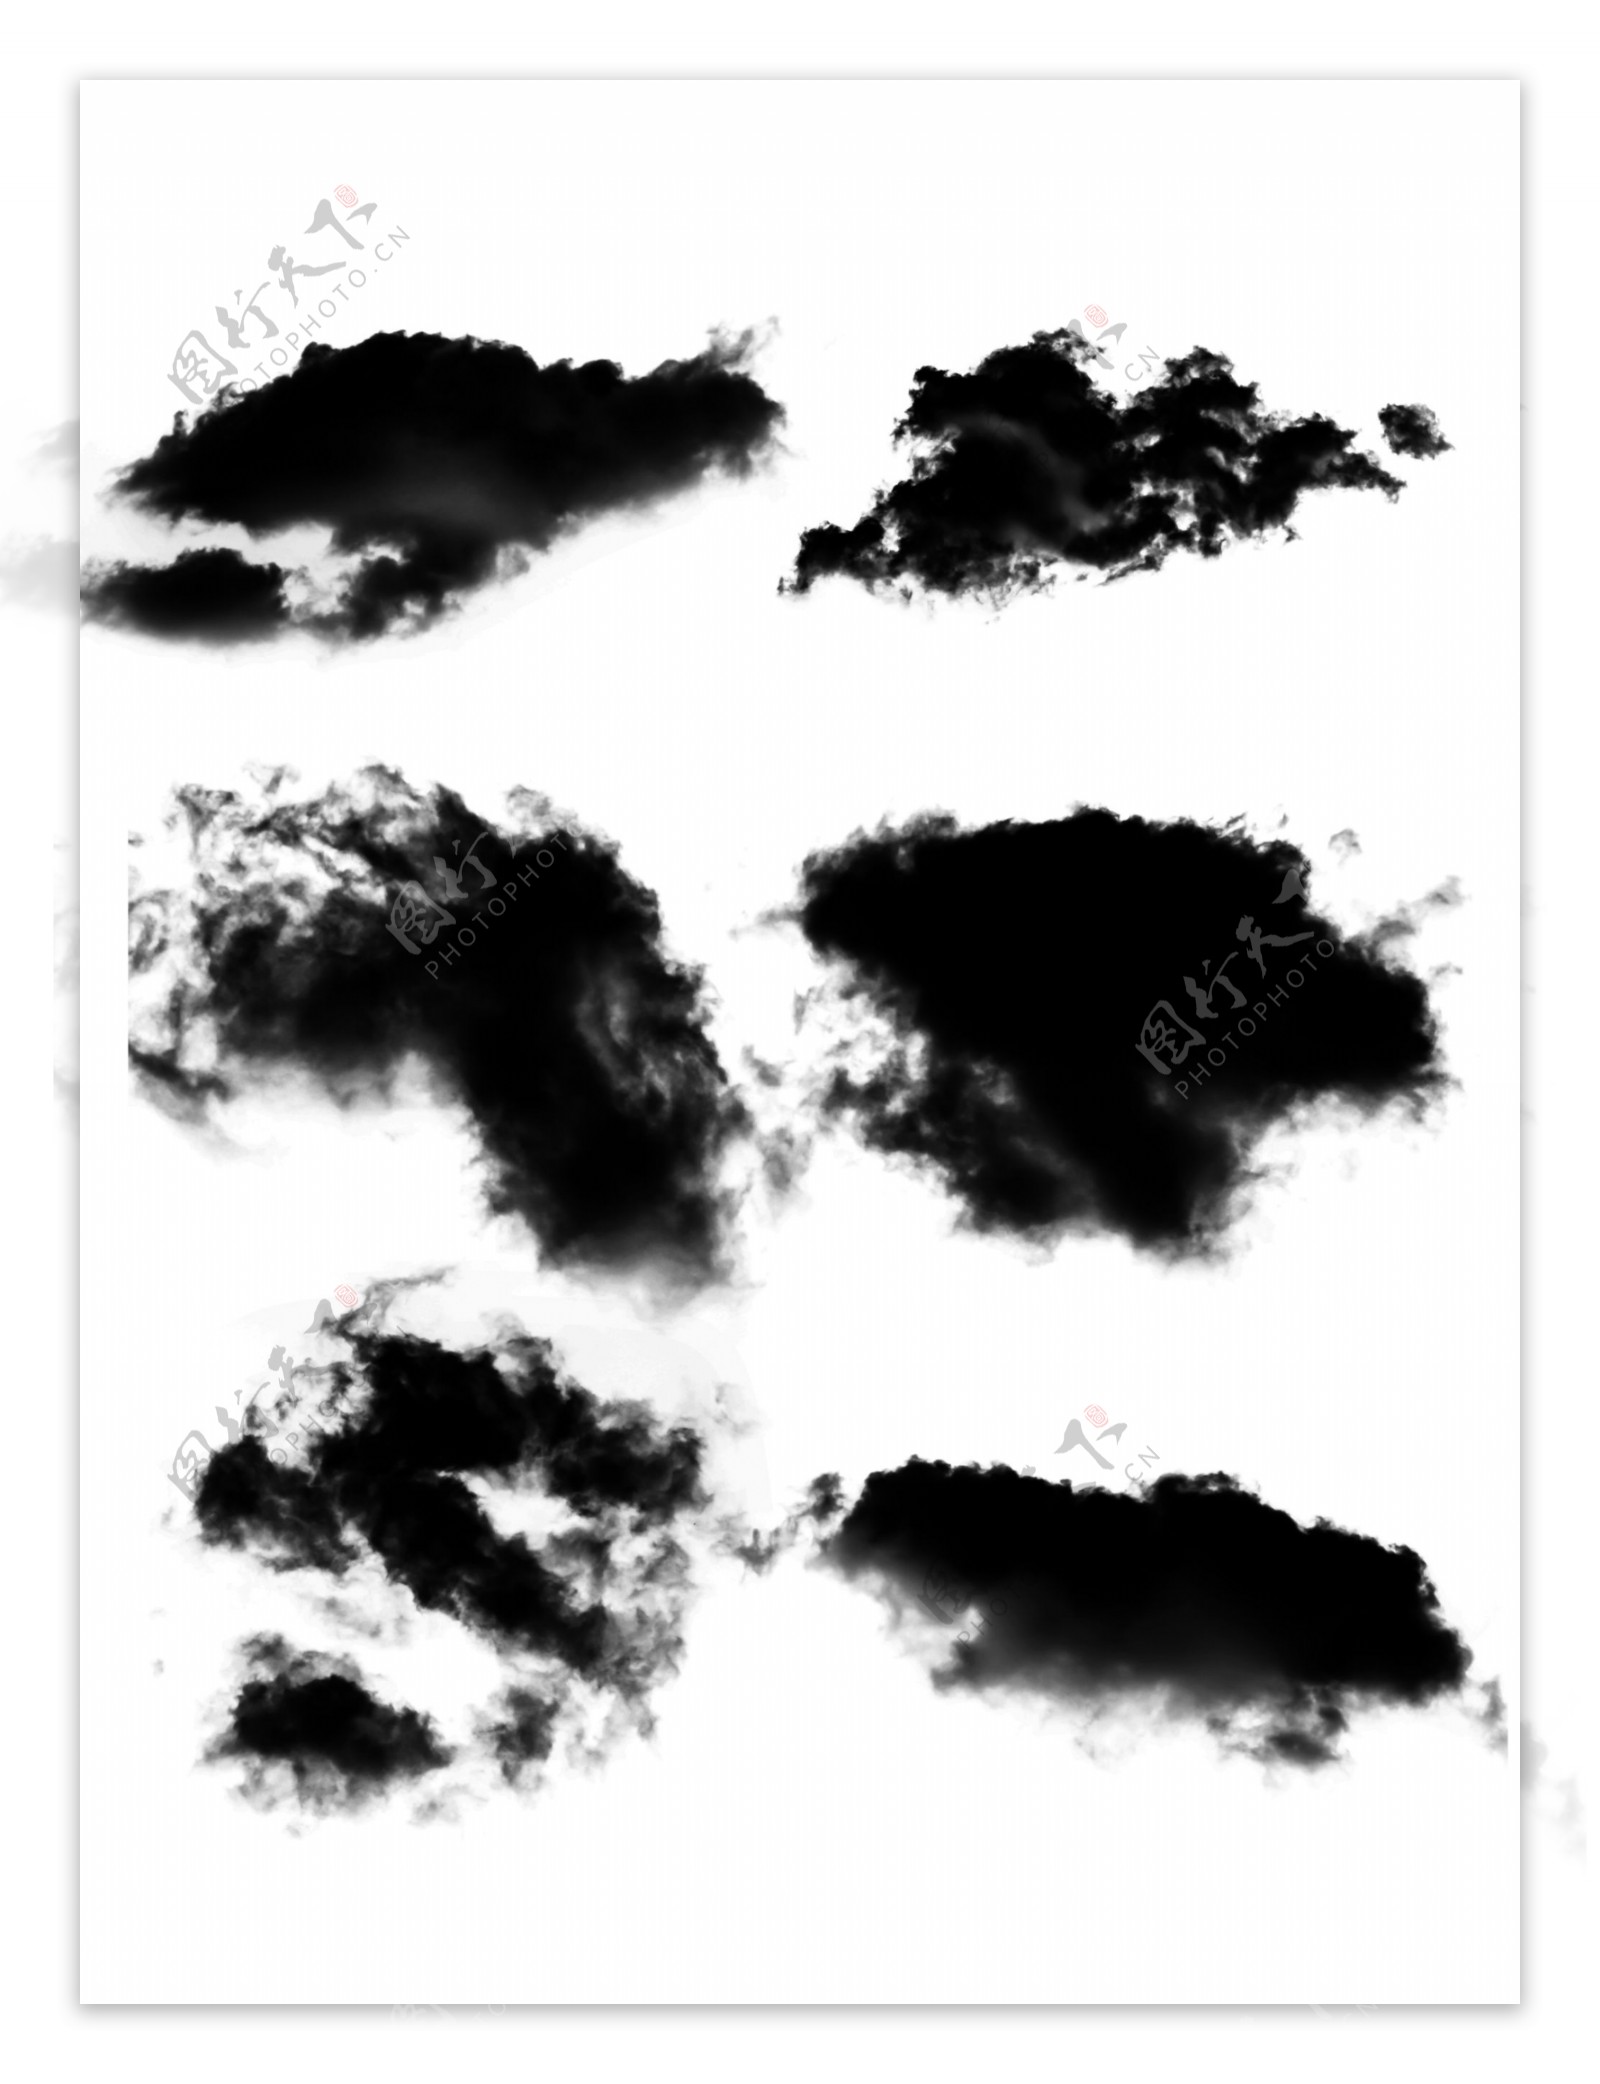 简约写实中国风黑色水墨云效果素材